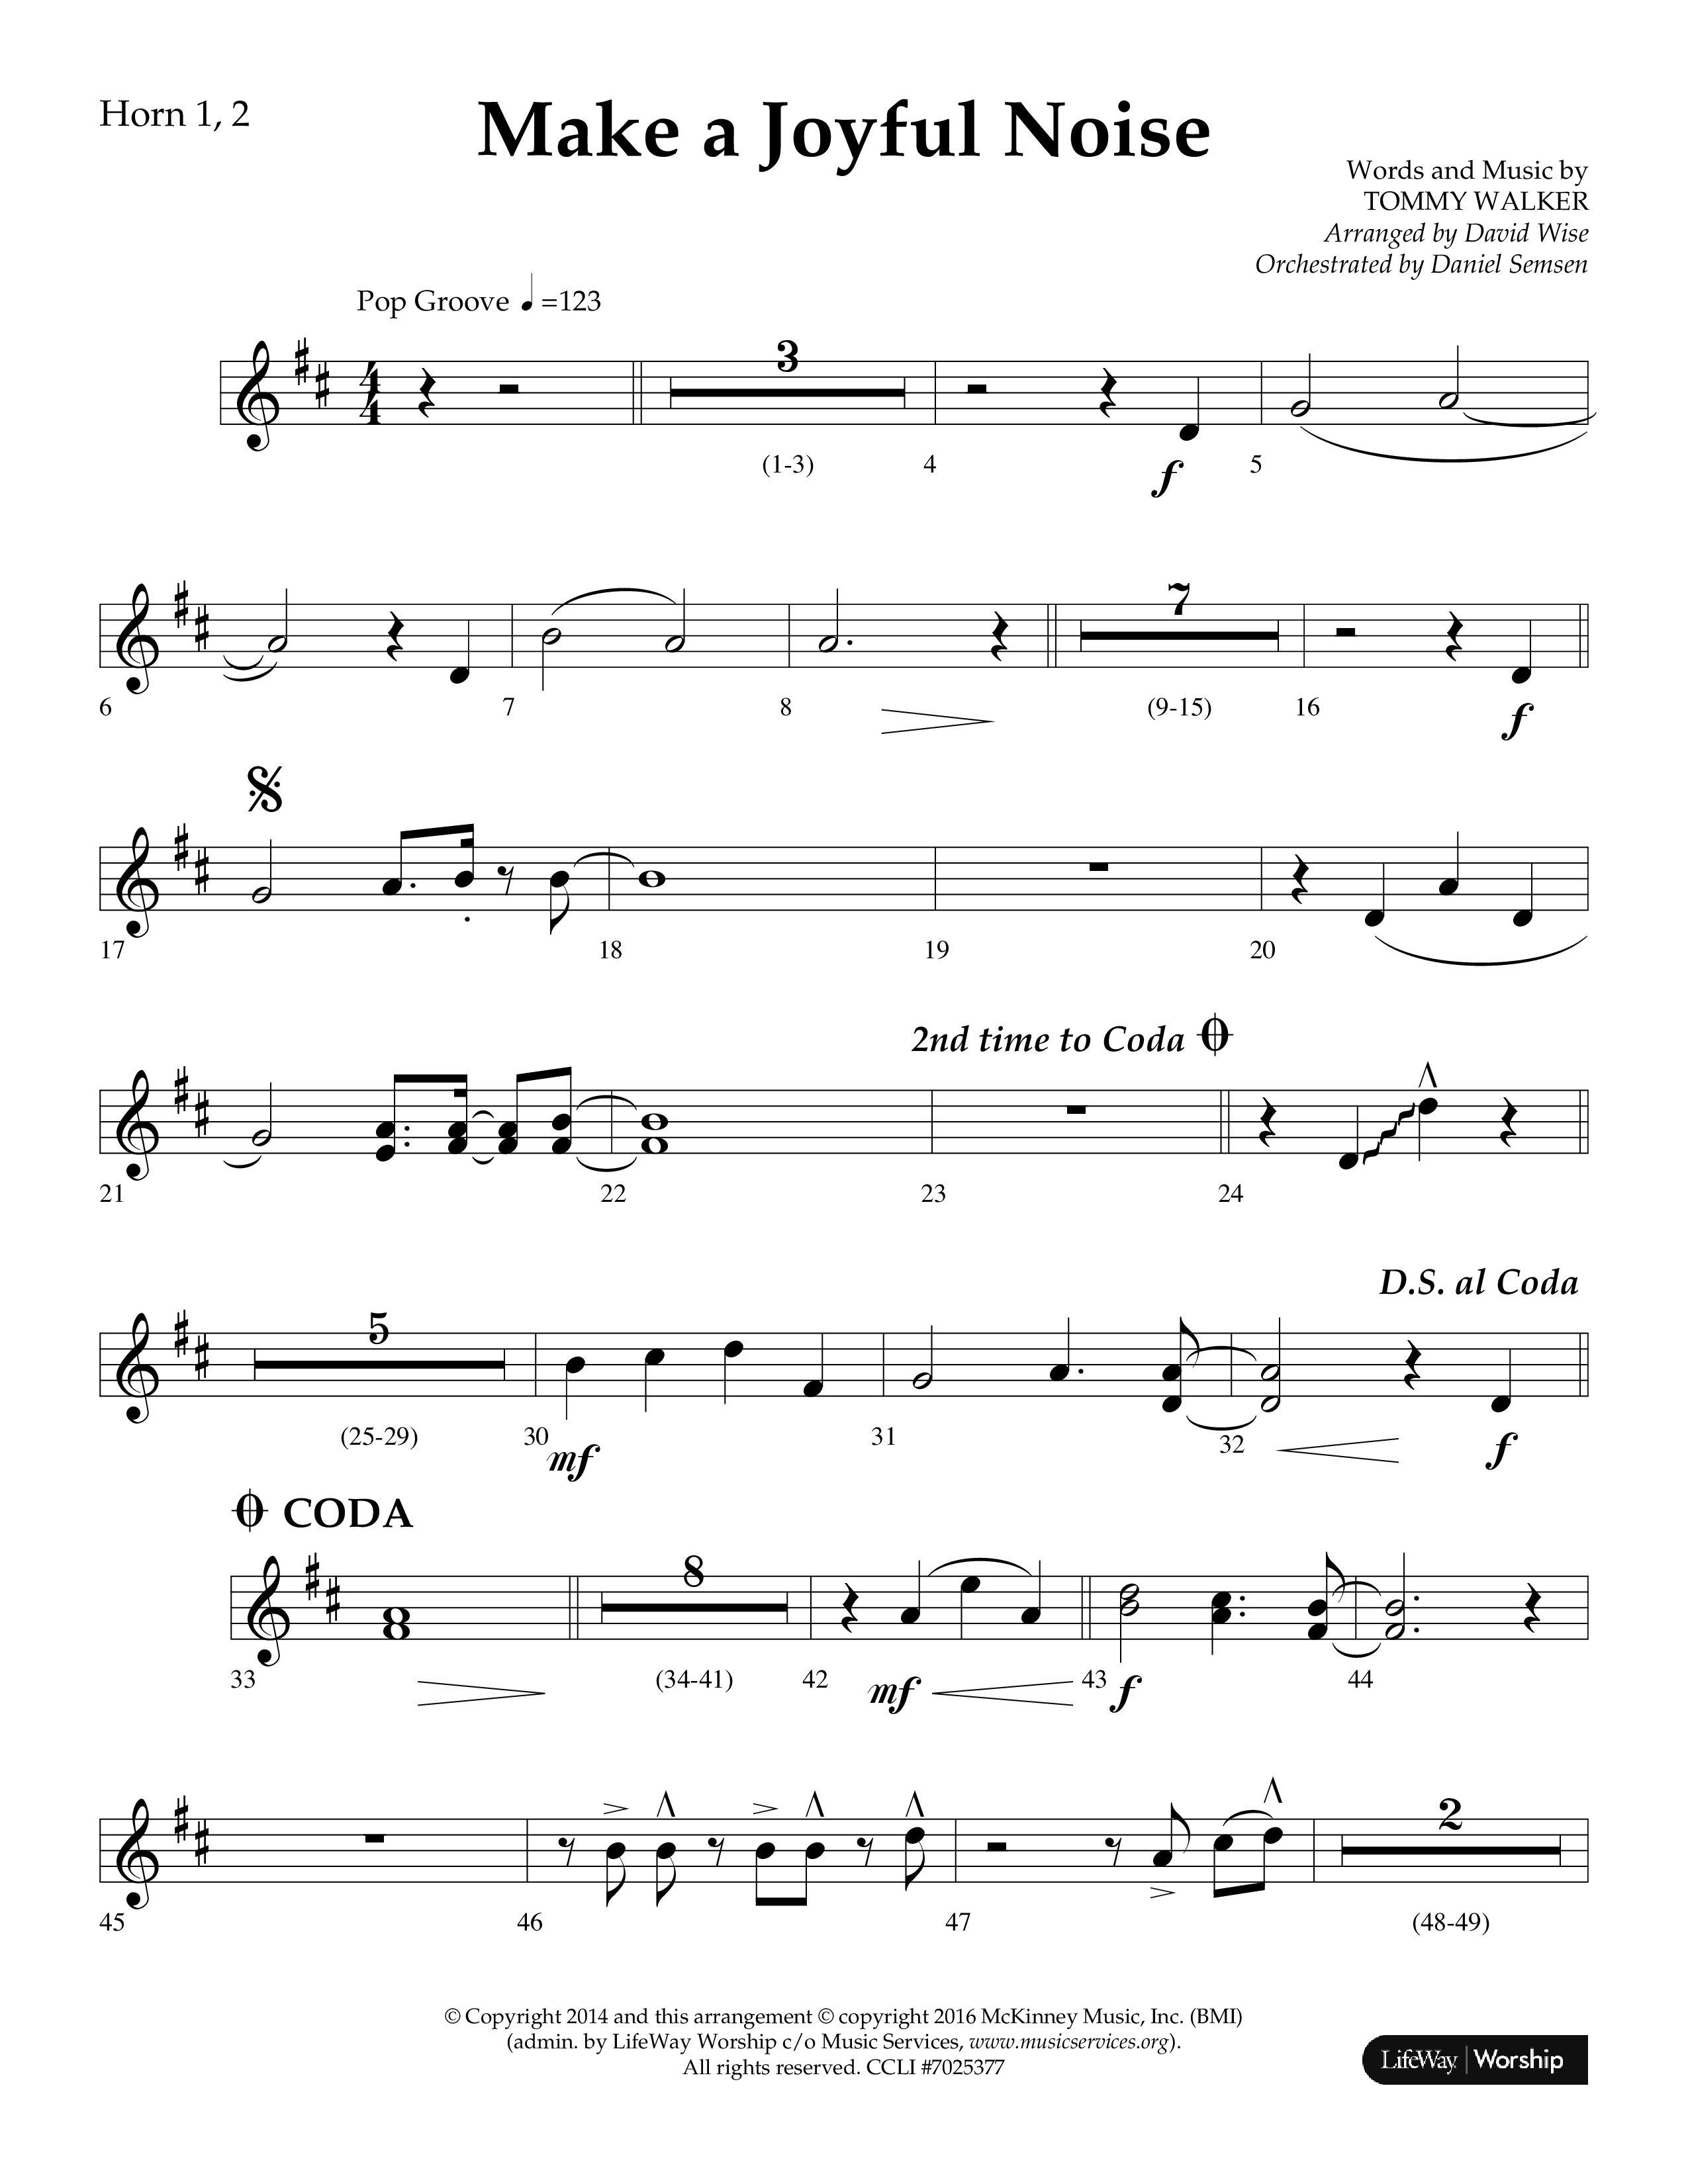 Make A Joyful Noise (Choral Anthem SATB) French Horn 1/2 (Lifeway Choral / Arr. David Wise / Orch. Daniel Semsen)